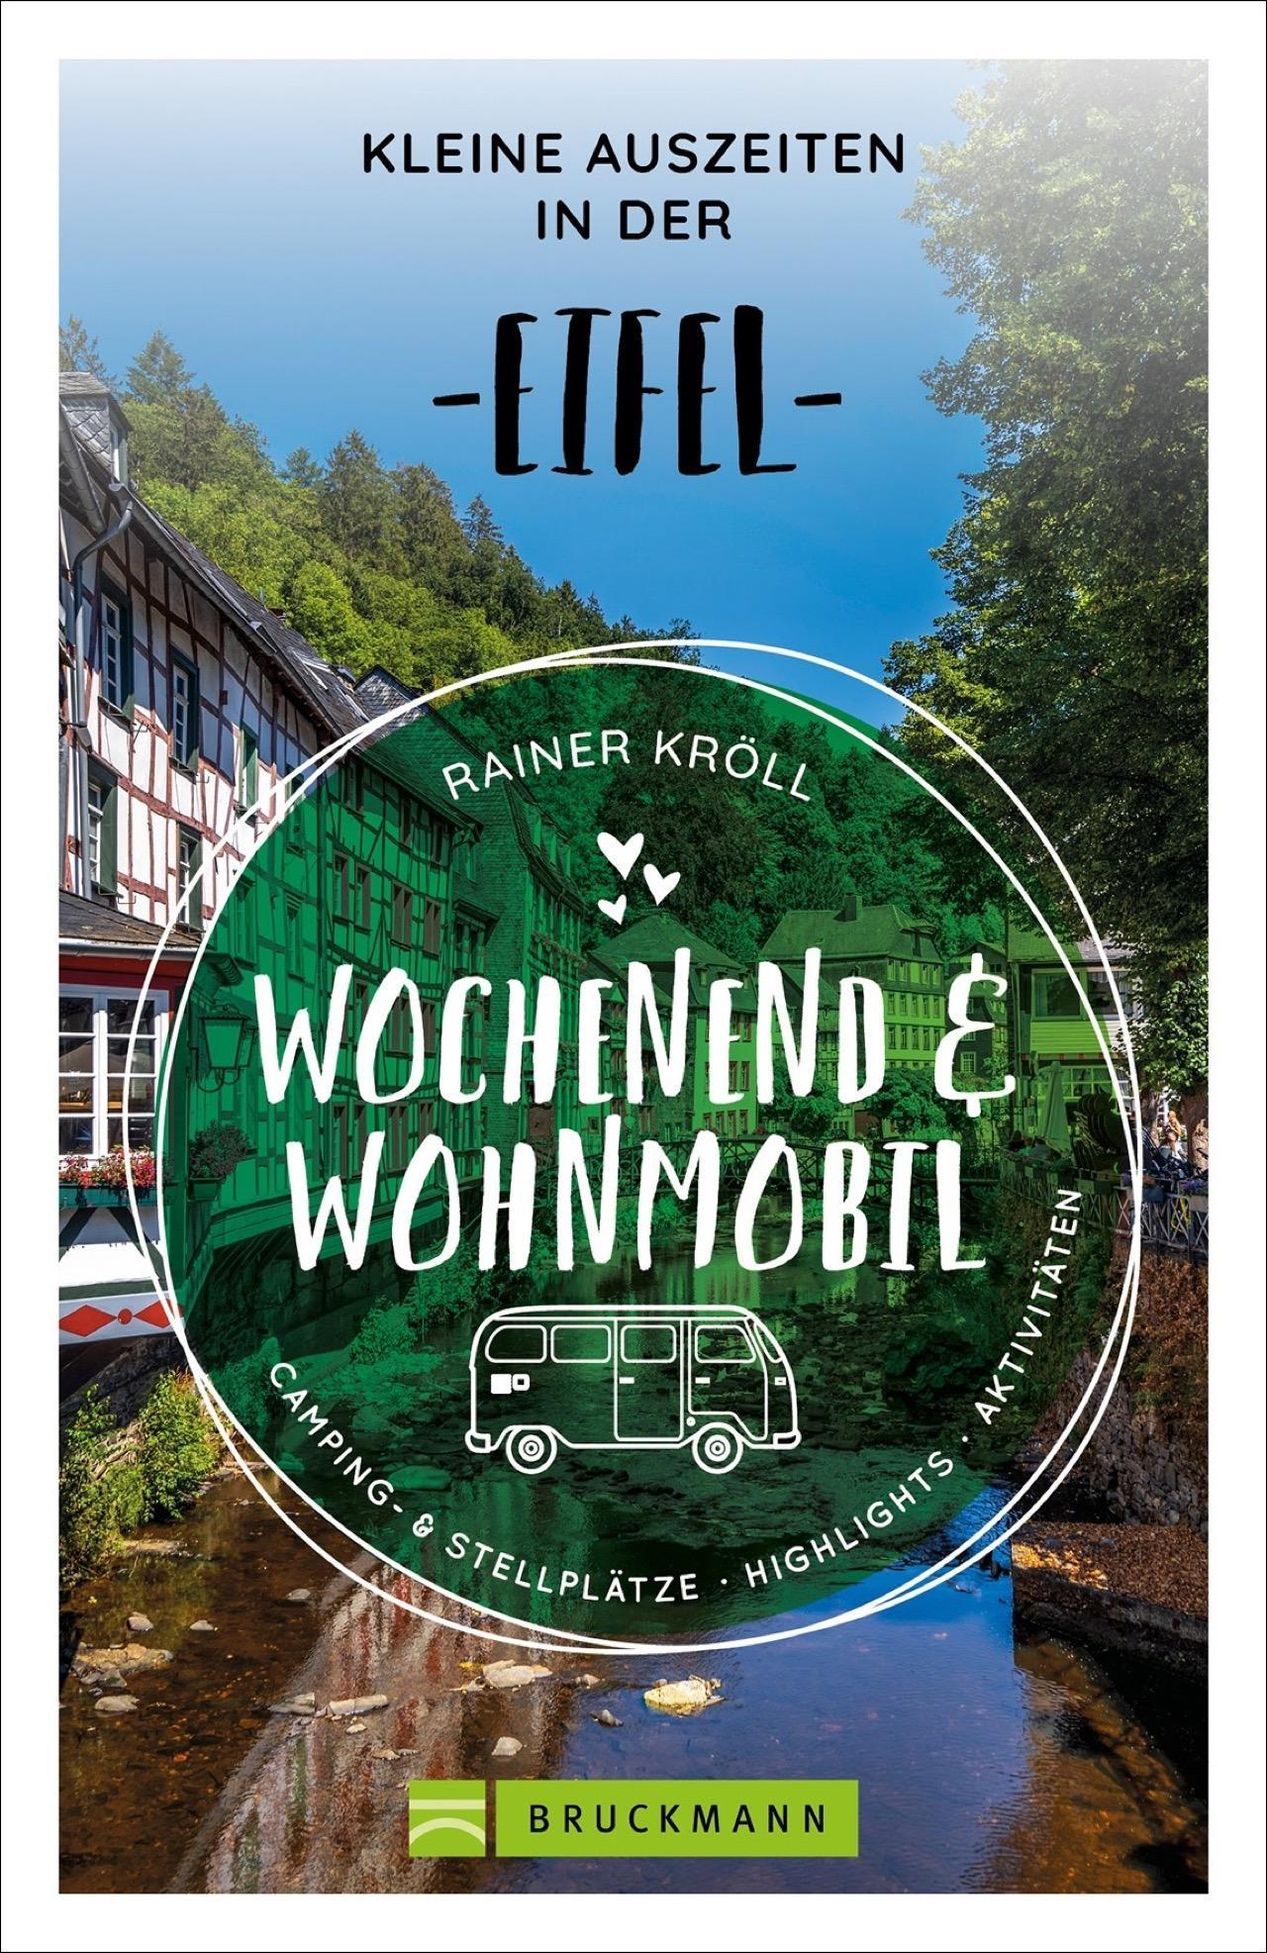 Wochenend und Wohnmobil - Kleine Auszeiten in der Eifel Buch